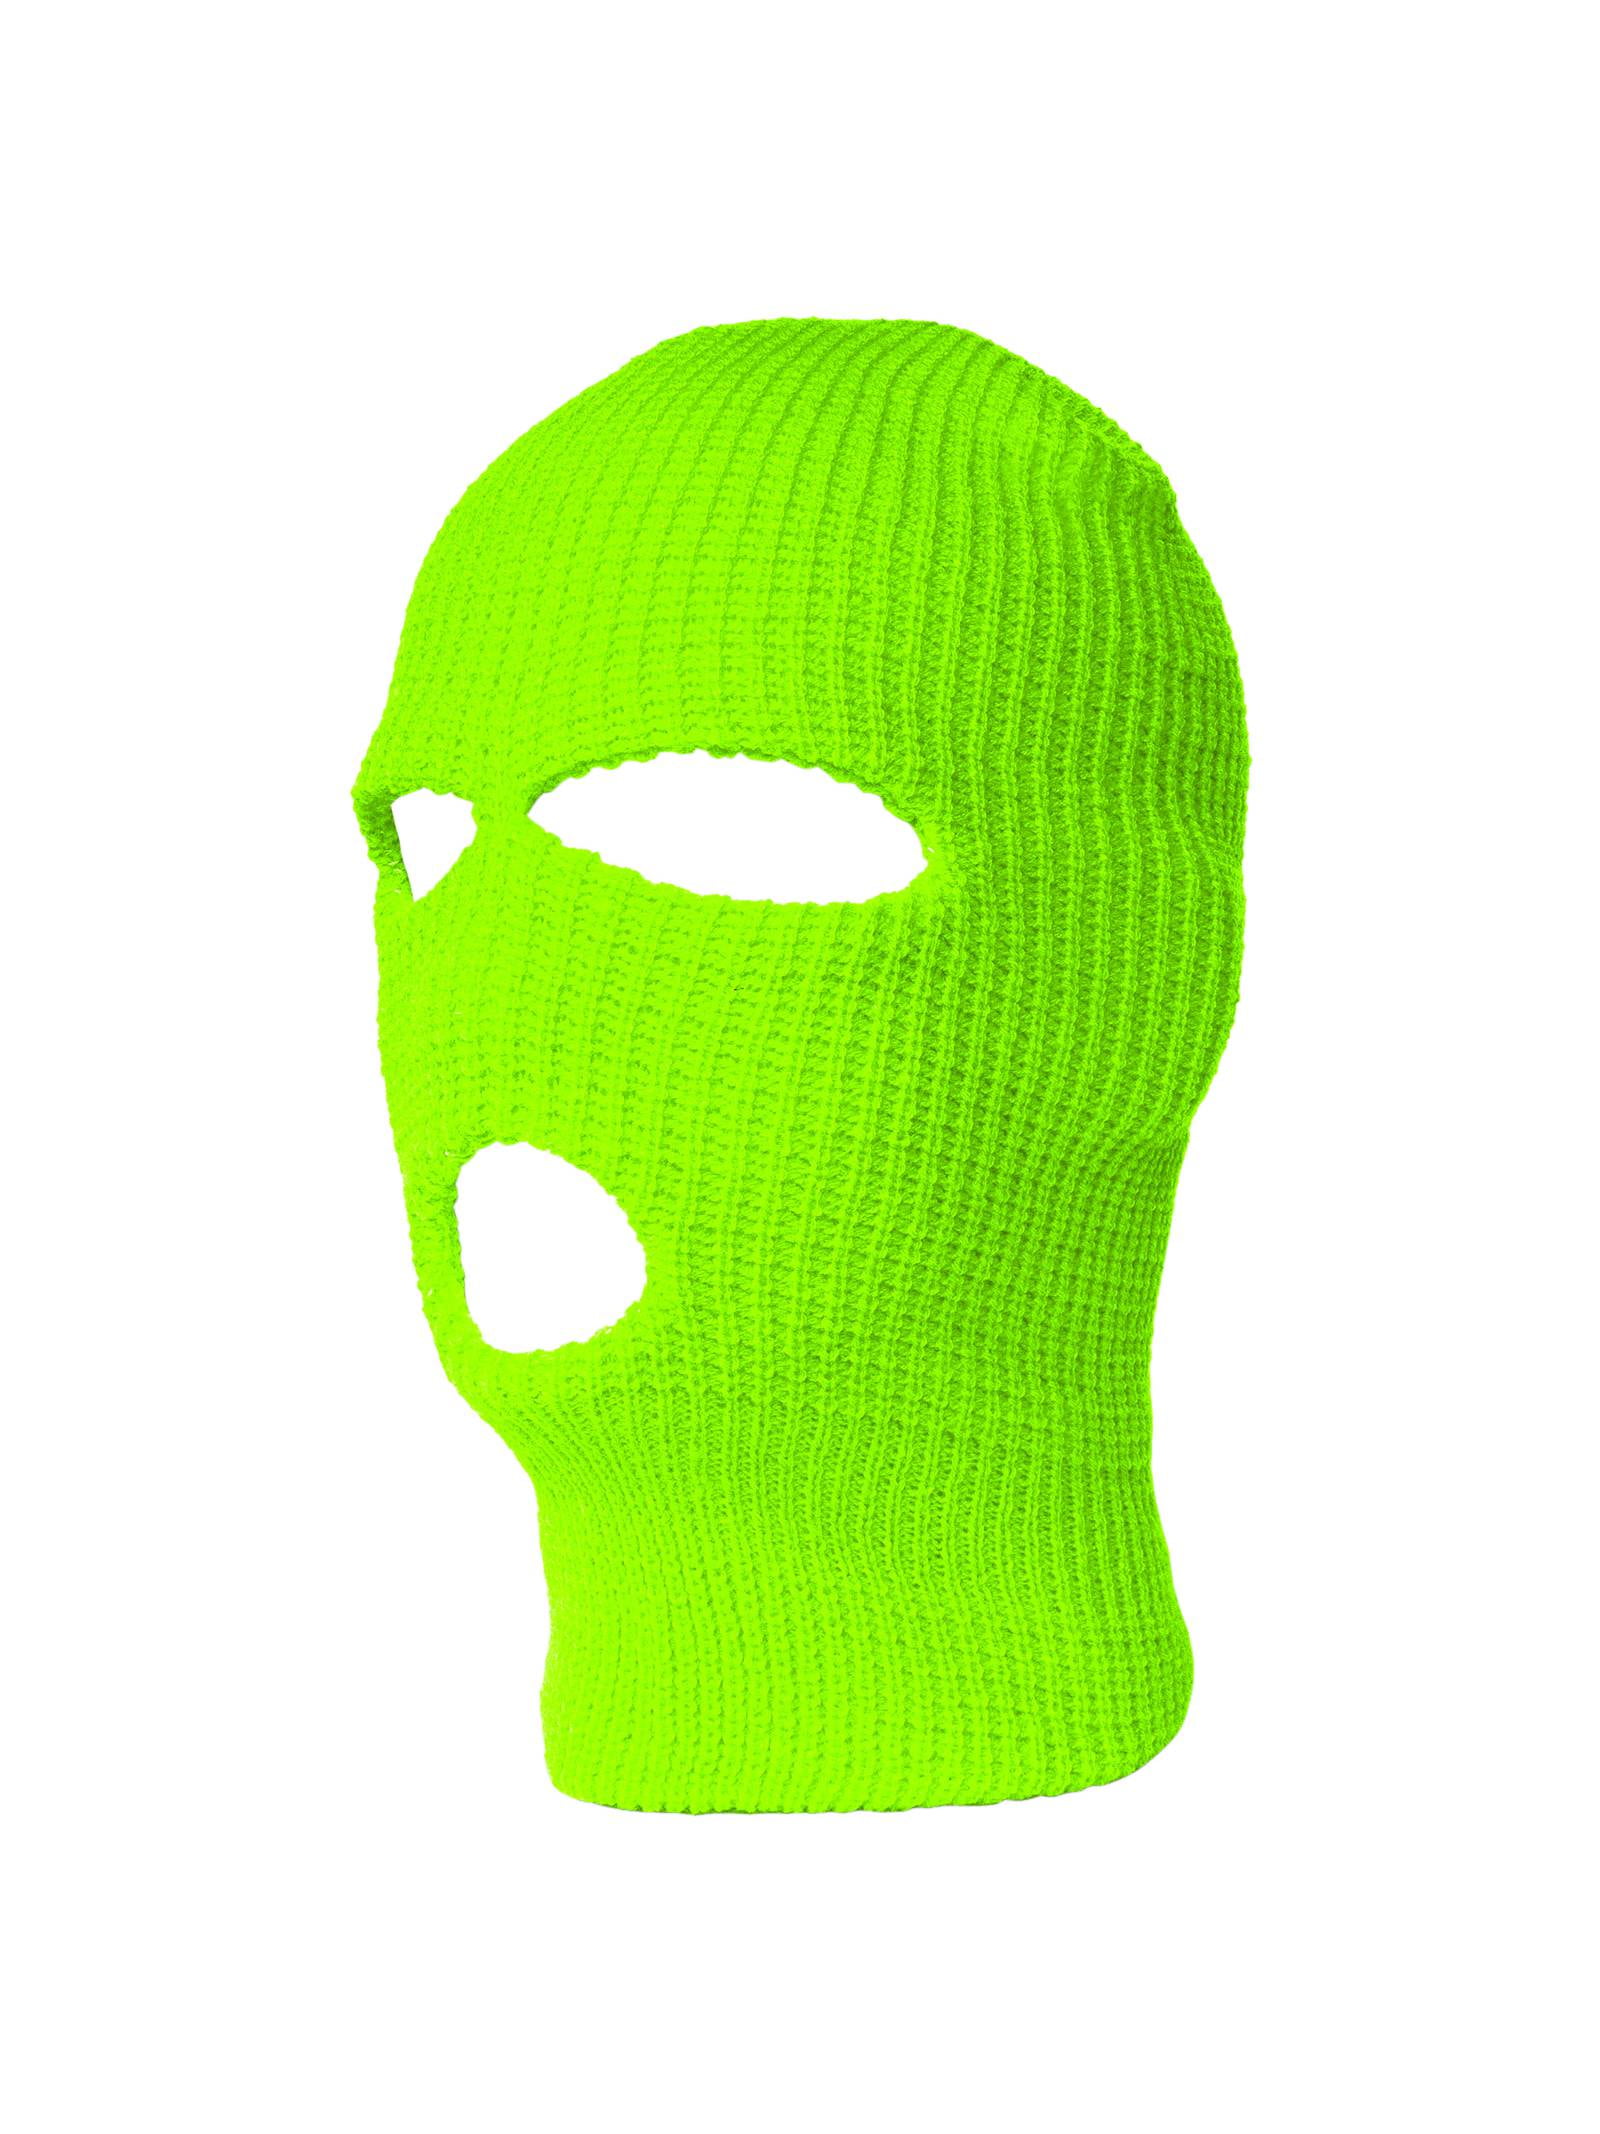 TopHeadwear's 3 Hole Face Ski Mask, Neon Green | Walmart Canada